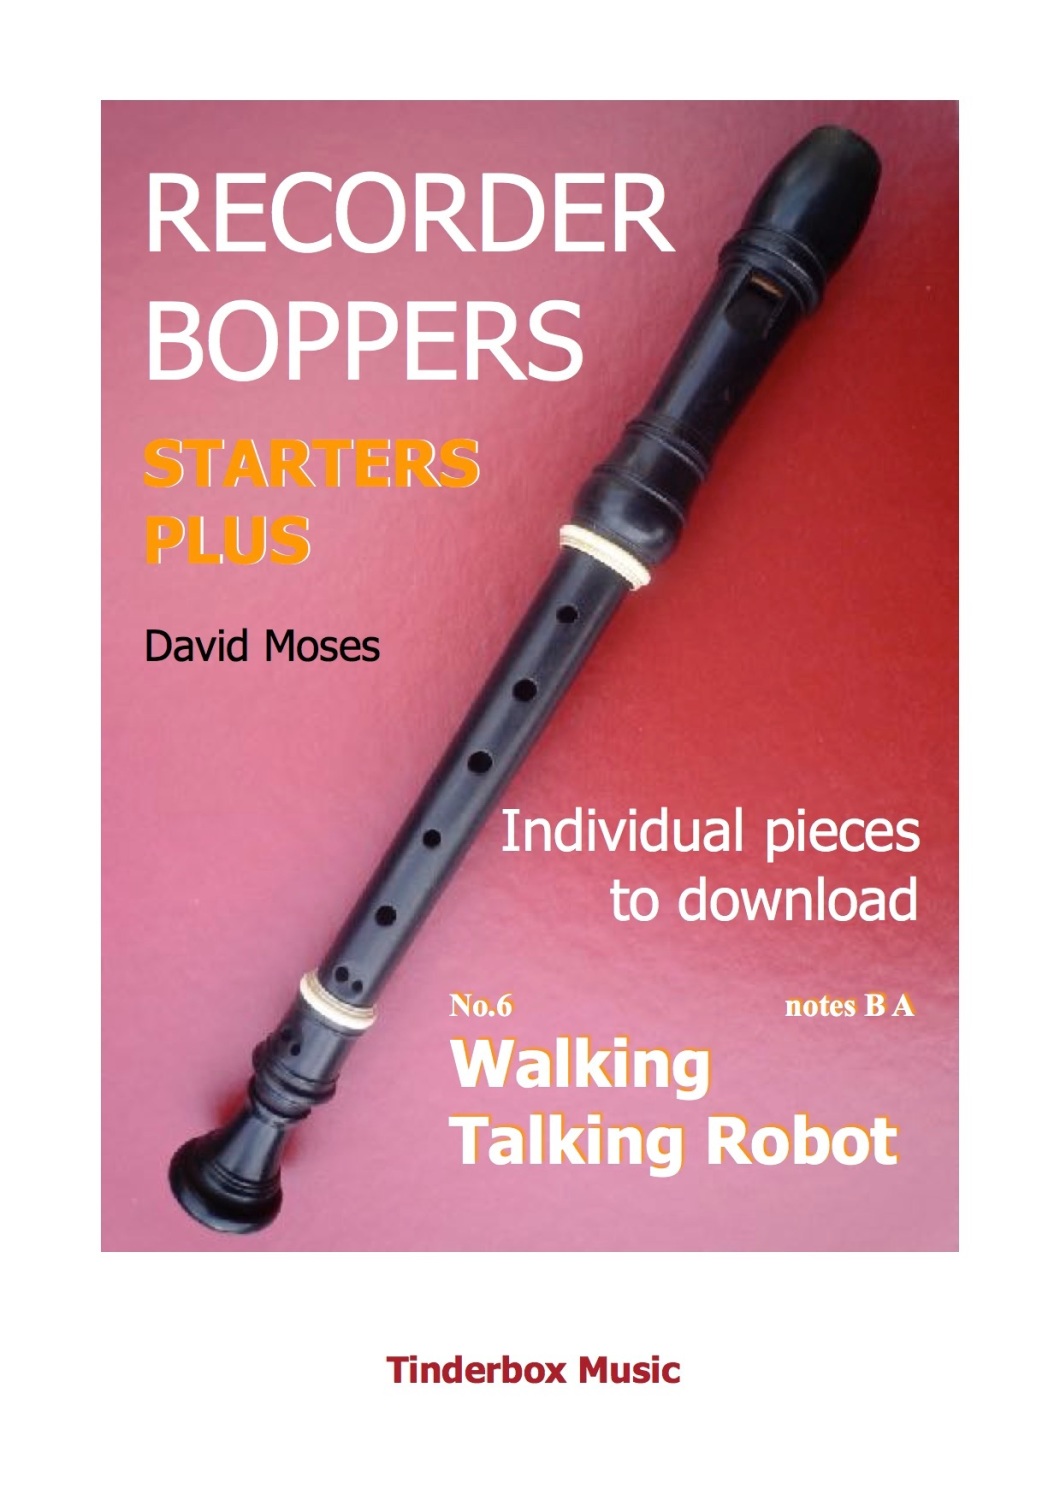 STARTERS PLUS individual pieces no.6  WALKING TALKING ROBOT download